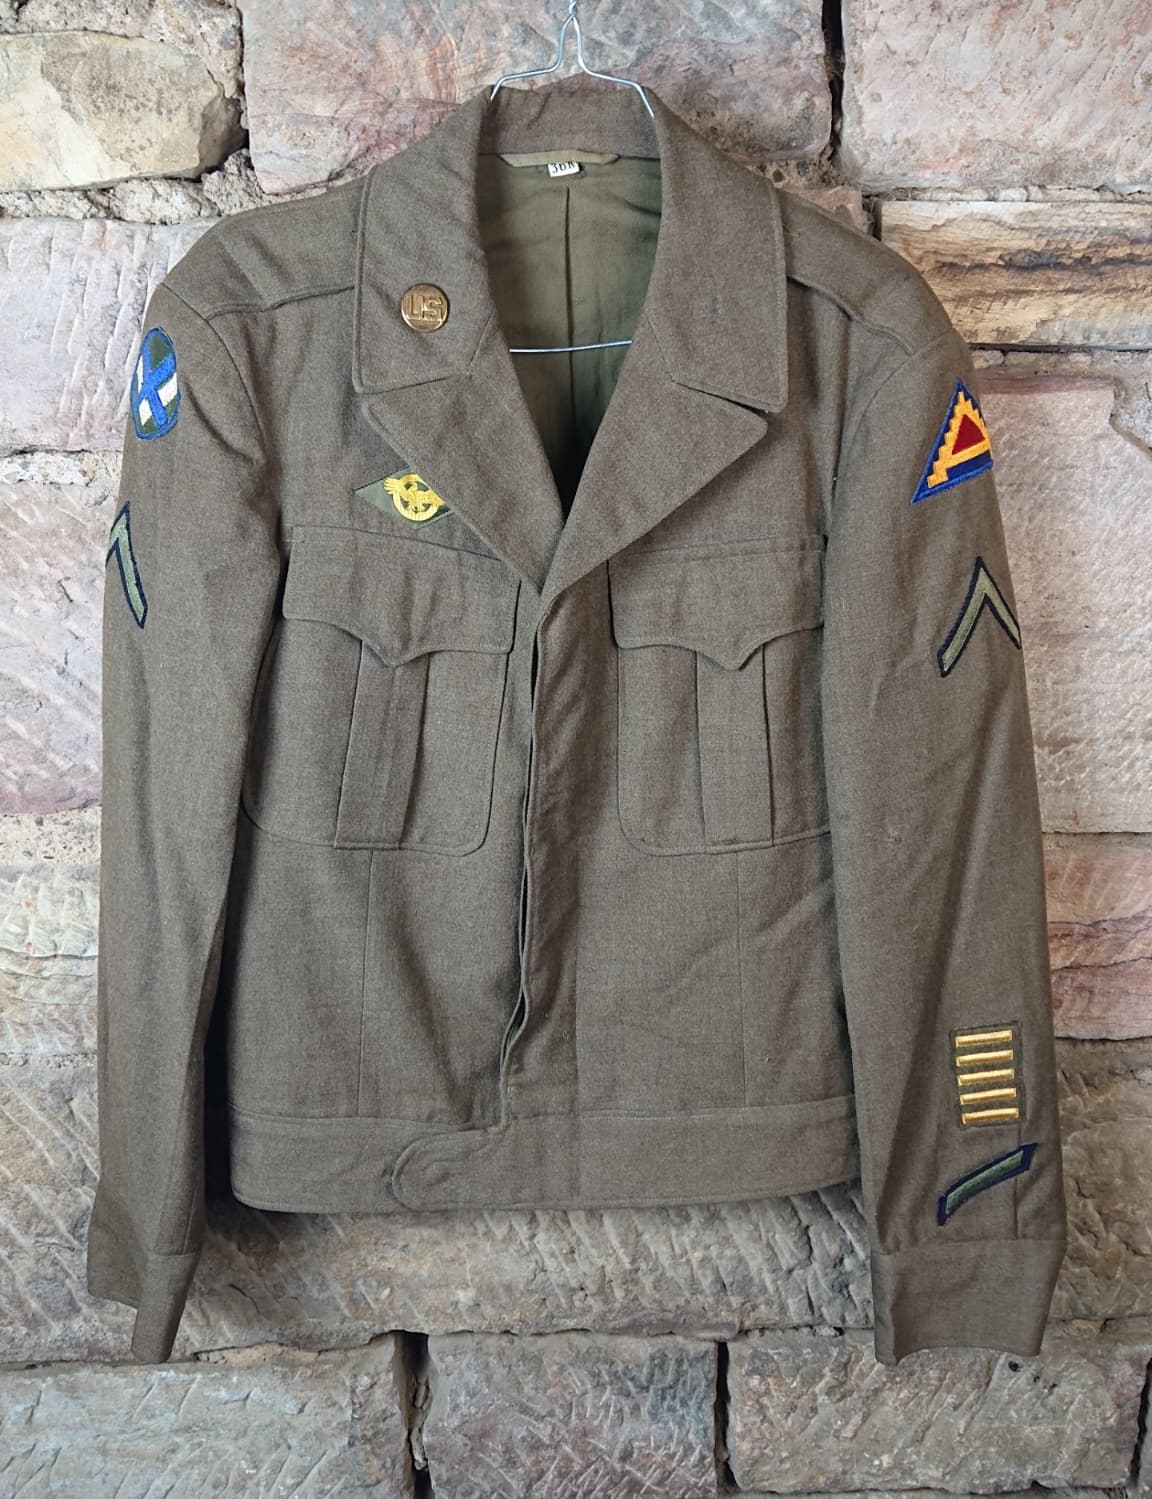 militaria : veste IKE US 36R 7eme armée / 7th army IKE jacket 36R